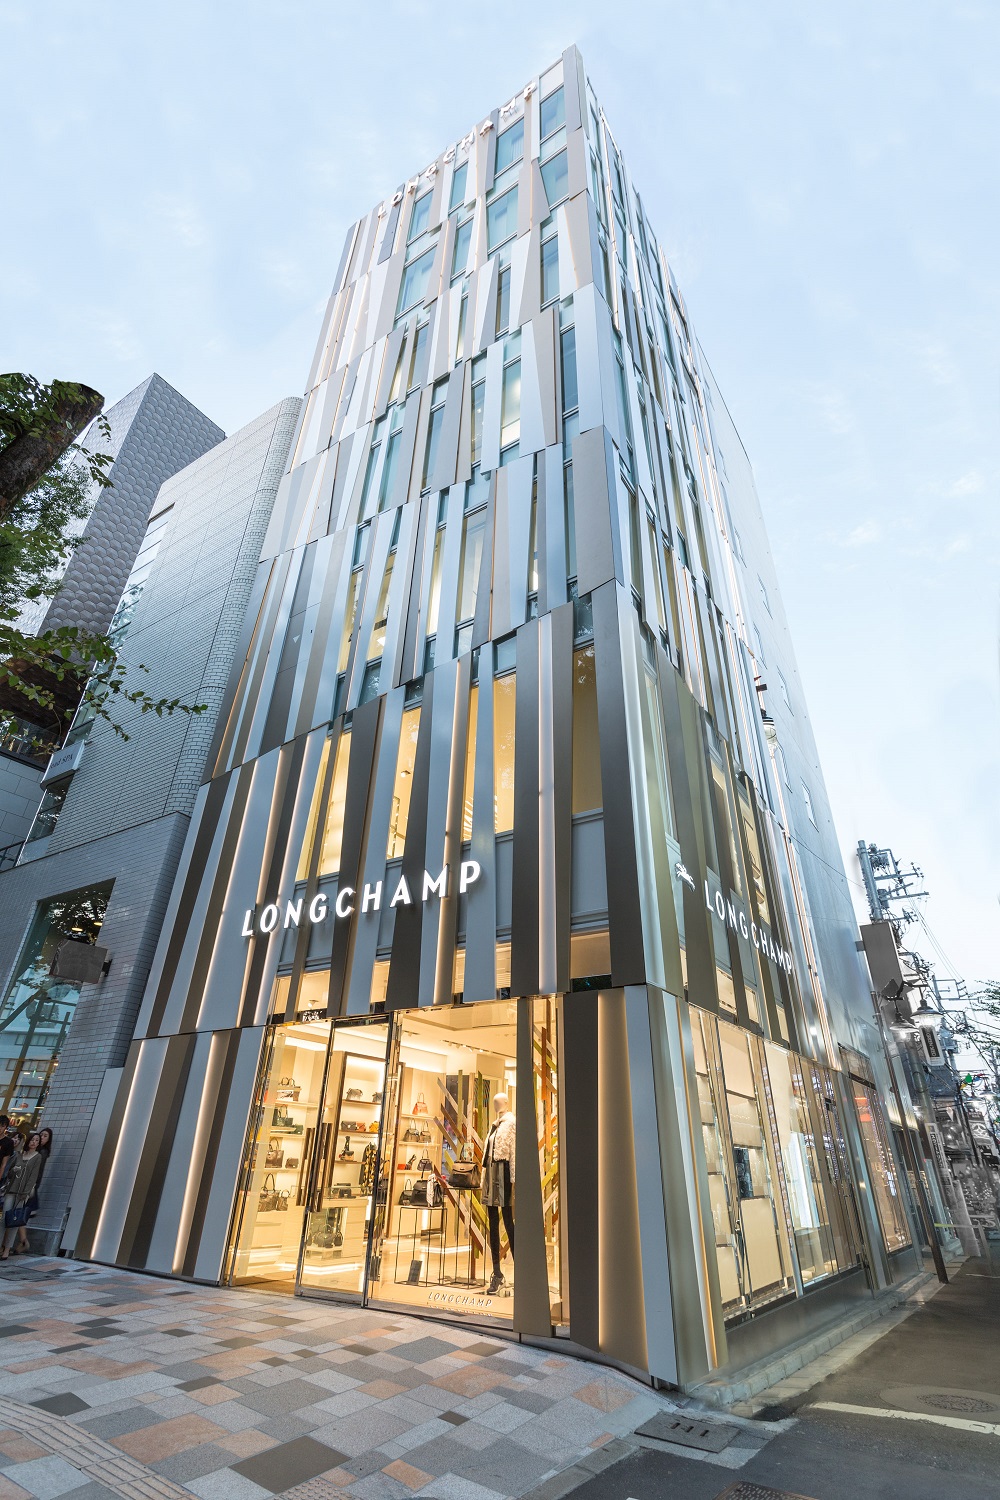 法國知名精品品牌Longchamp在日本東京時尚中心表參道開設全新旗艦店(3).jpg